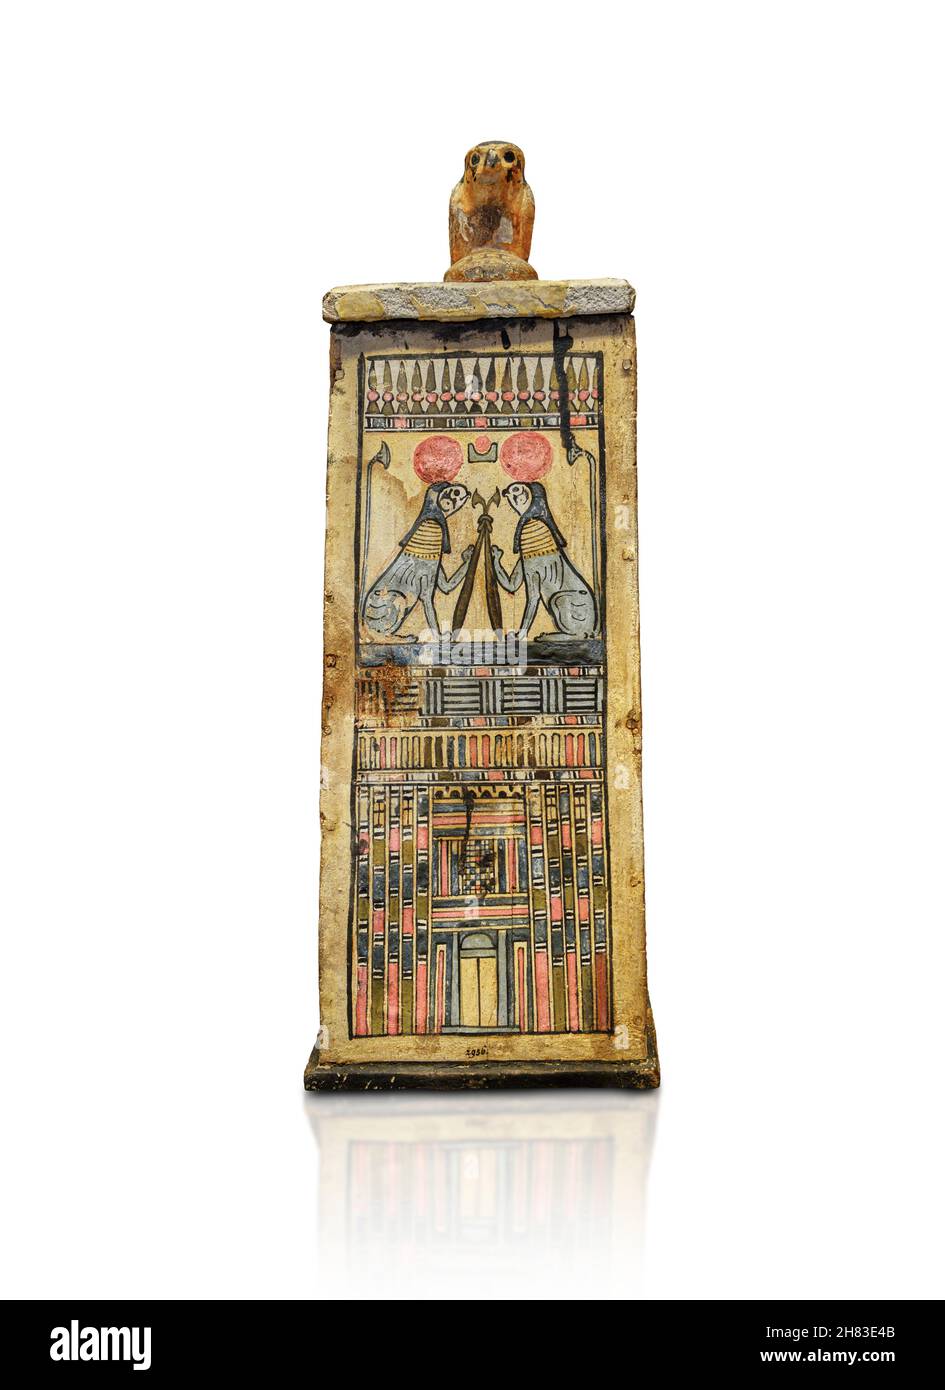 Ptolemäische ägyptische Grabkammer, Canopische Grabkammer, 305-31 v. Chr. Ptolemäus-Zeit. Kunsthistorisches Museum Wien ALS 806. Lackiertes Holz, H 50,2 cm, B 21,8 cm. Stockfoto